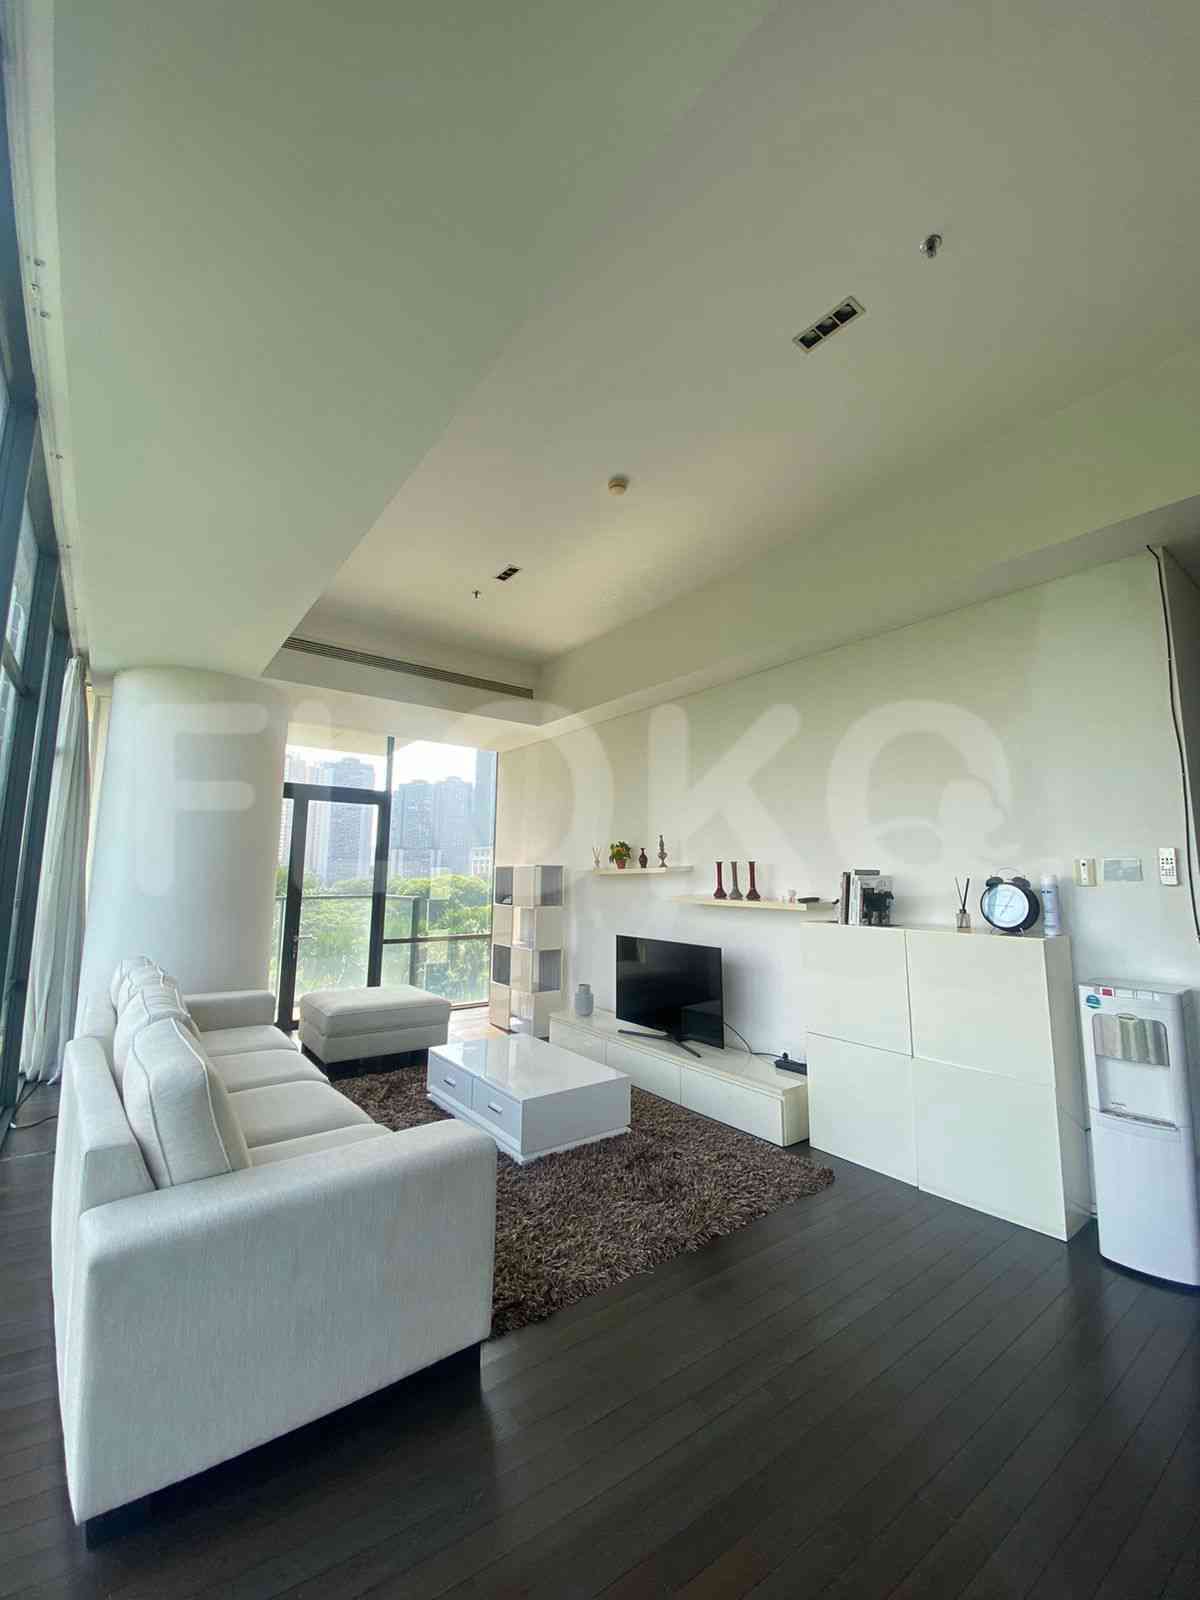 3 Bedroom on 5th Floor for Rent in Verde Residence - fku21e 4